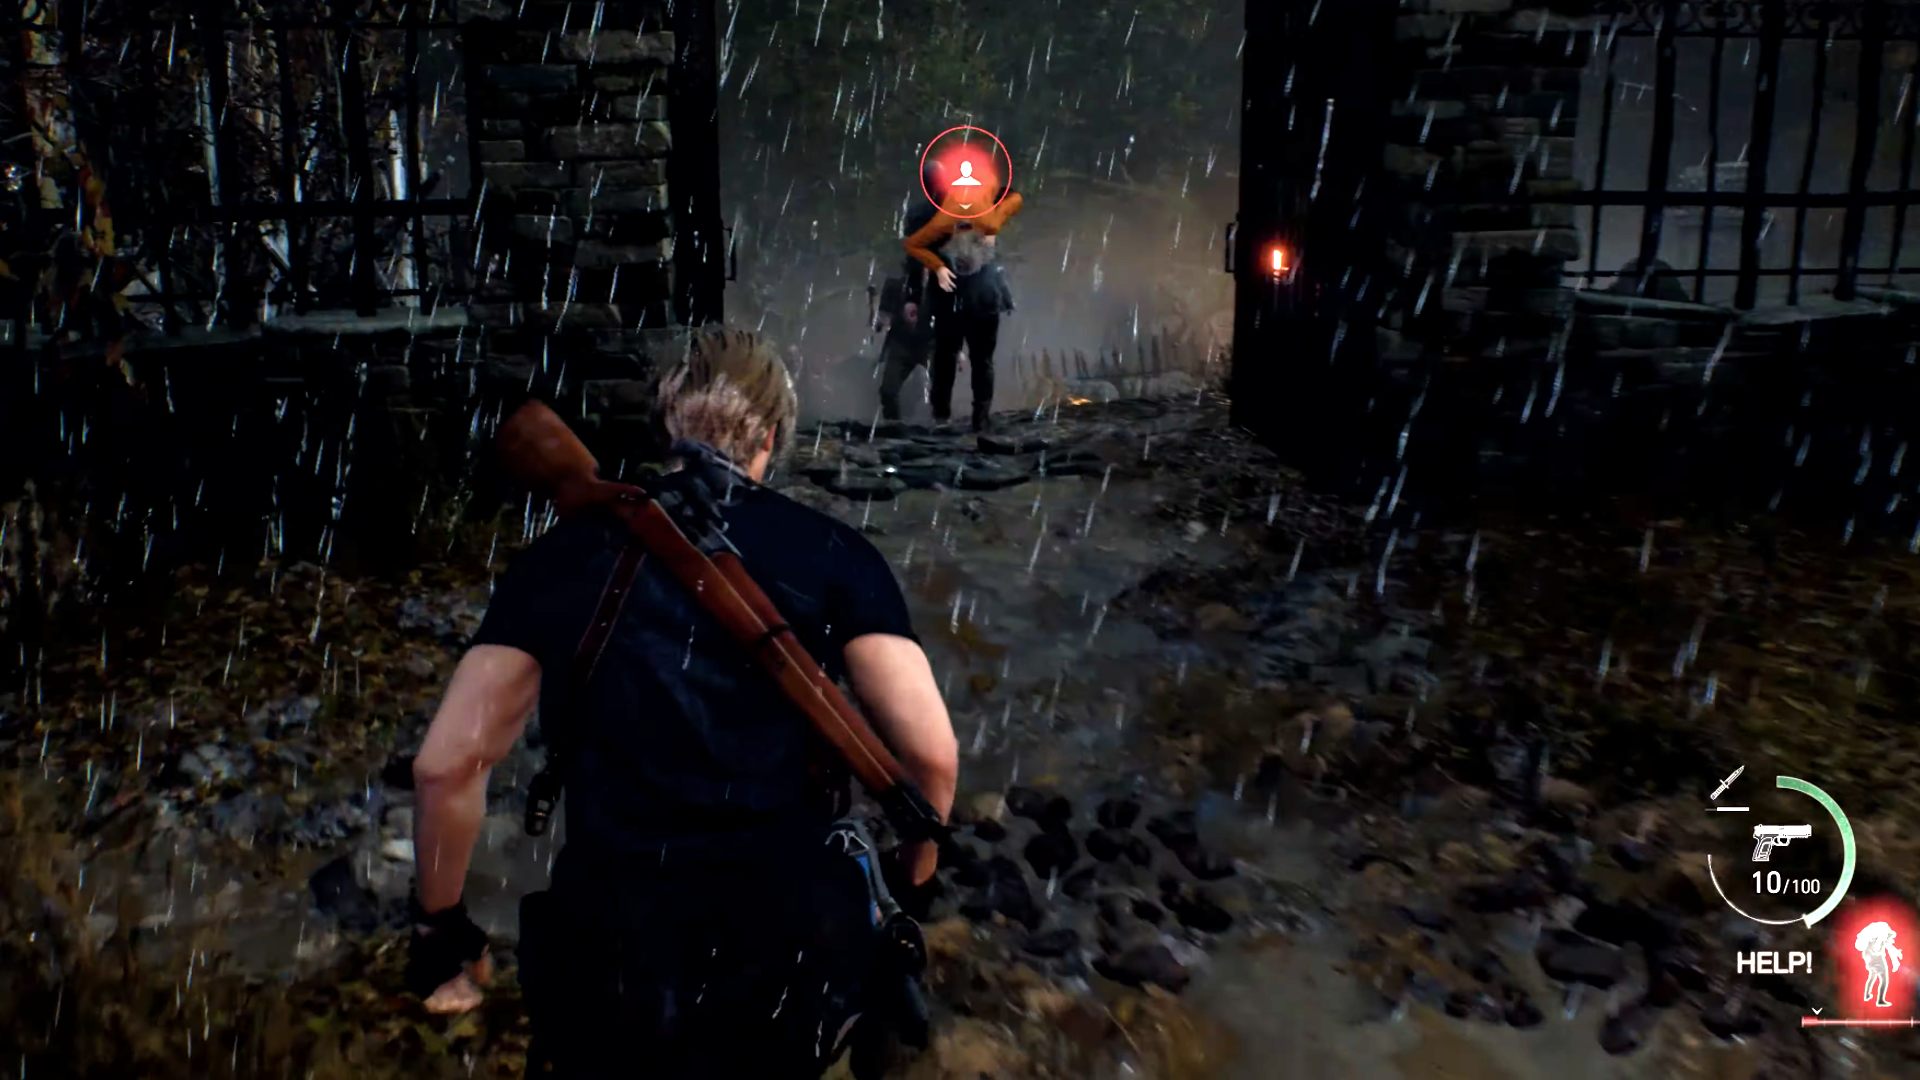 Resident Evil 4 Remake (2023) Trainer +19 on Vimeo